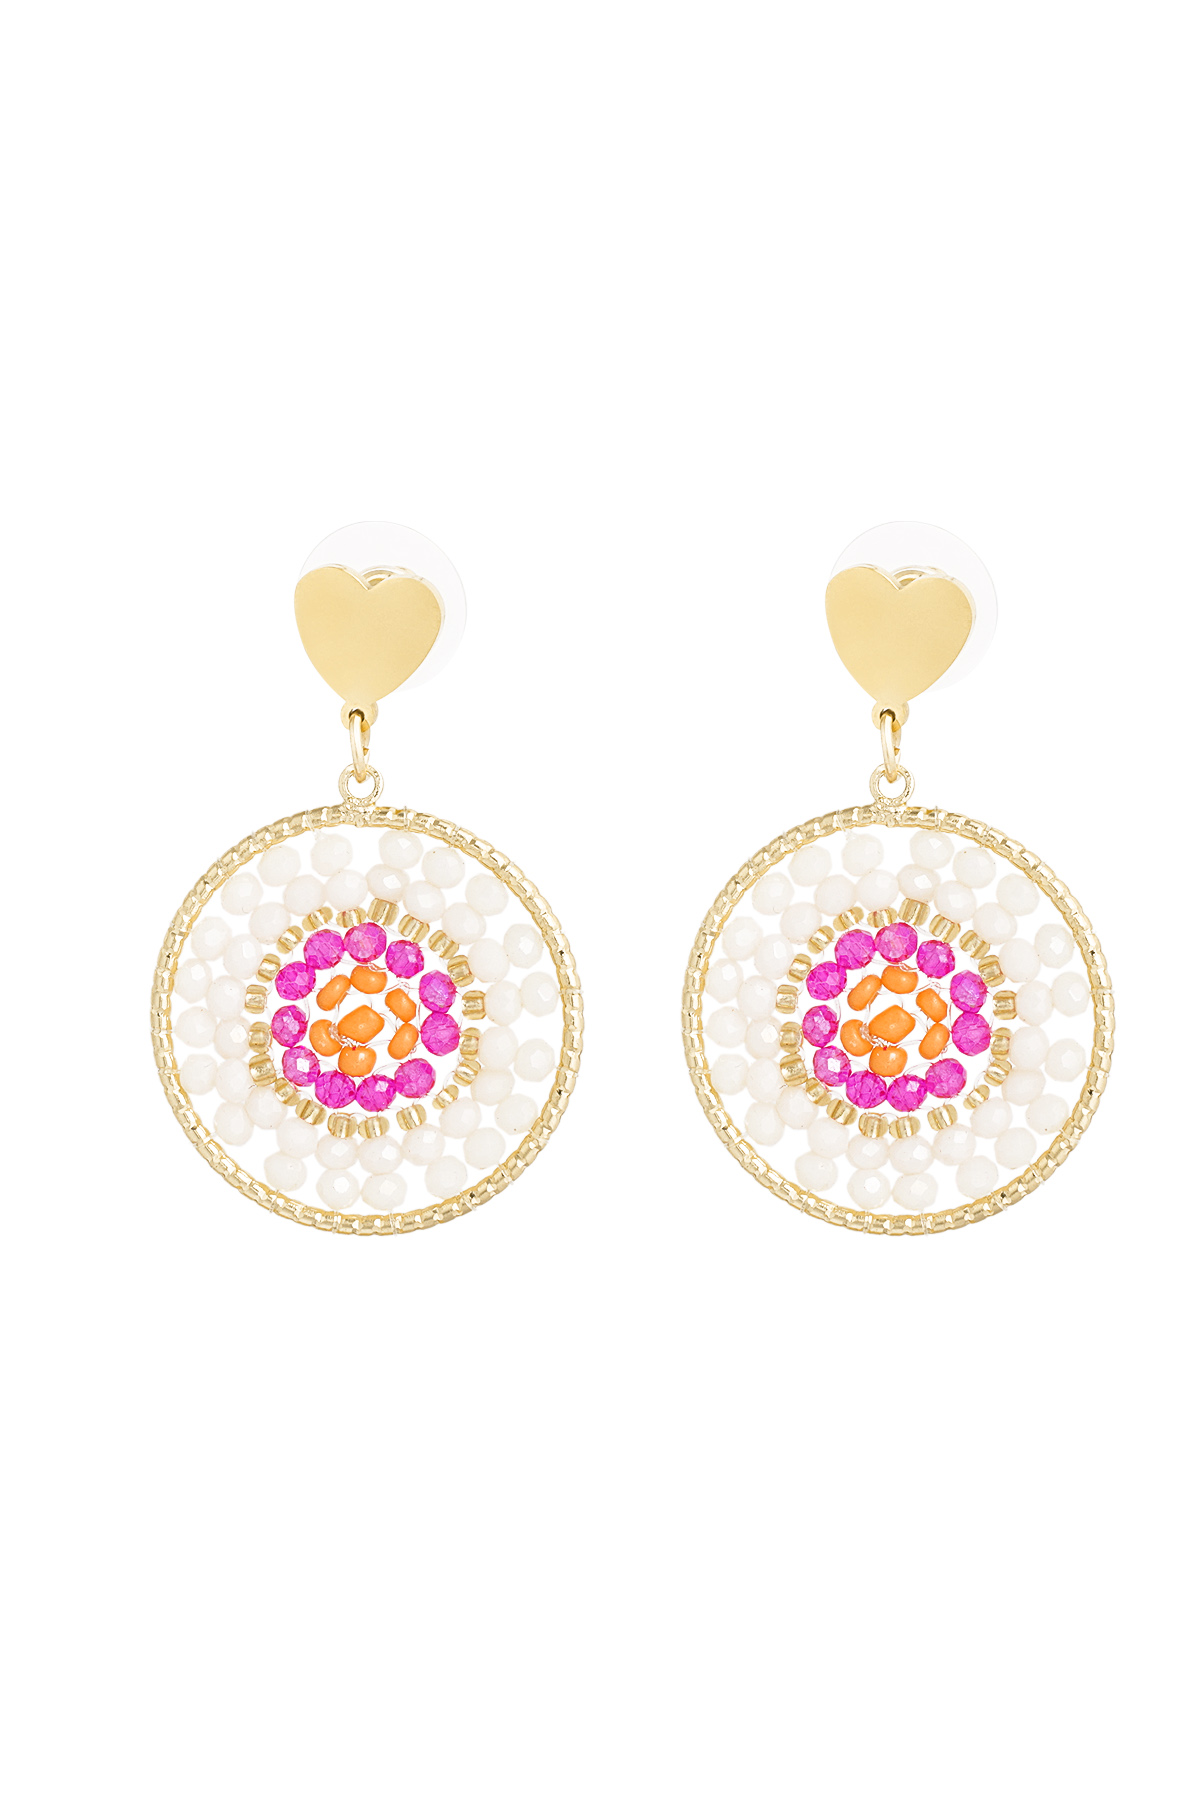 Mandala earrings with heart - multi